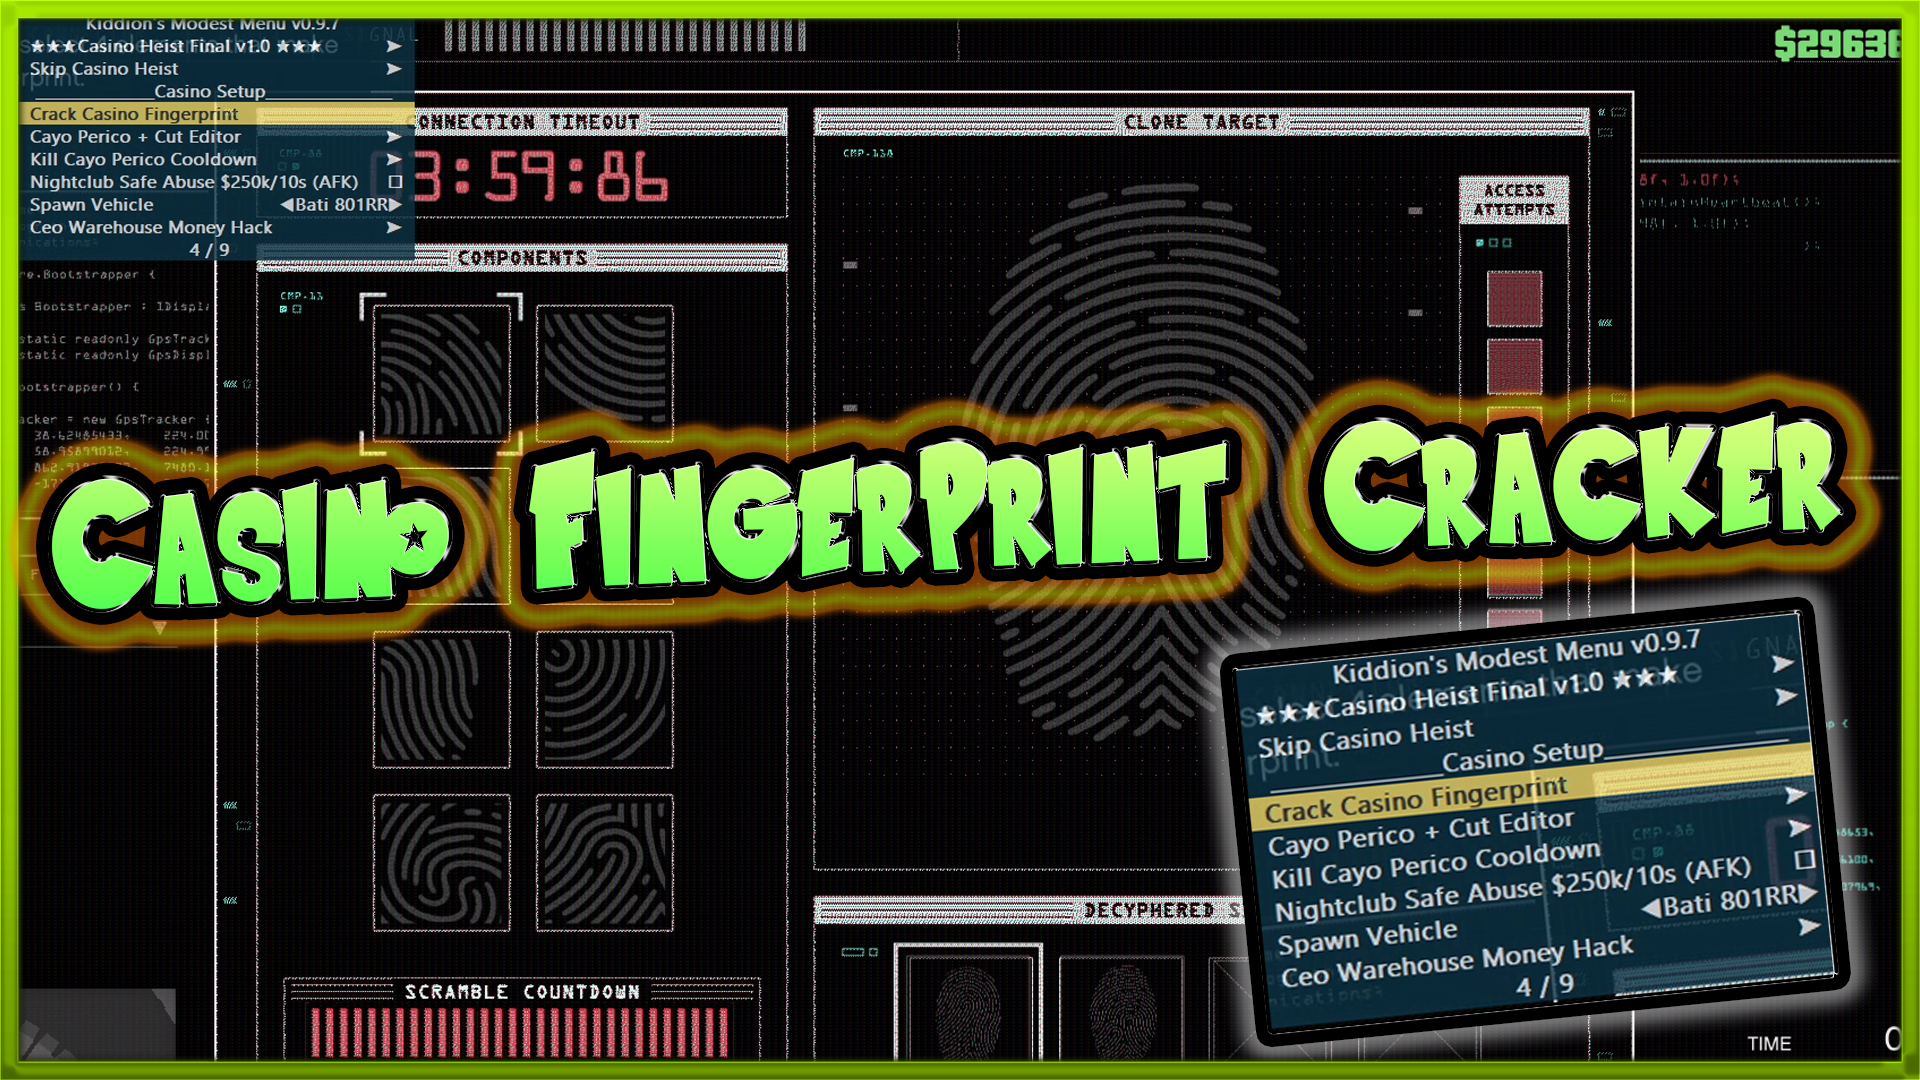 fingerprint,cayo perico fingerprint cloner,fingerprint cloner cayo perico,cayo perico fingerprint cloner cheat sheet,fingerprint cloner gta,fingerprint cloner gta glitch,cayo perico fingerprint,cayo perico fingerprint hack,fingerprint hack gta,fingerprint hack gta cayo perico,cayo perico fingerprint hack guide,fingerprint scanner,fingerprint lock,gta 5 fingerprint scanner,fingerprint scanner easy gta,fingerprint pattern,ulock pc with fingerprint scanner